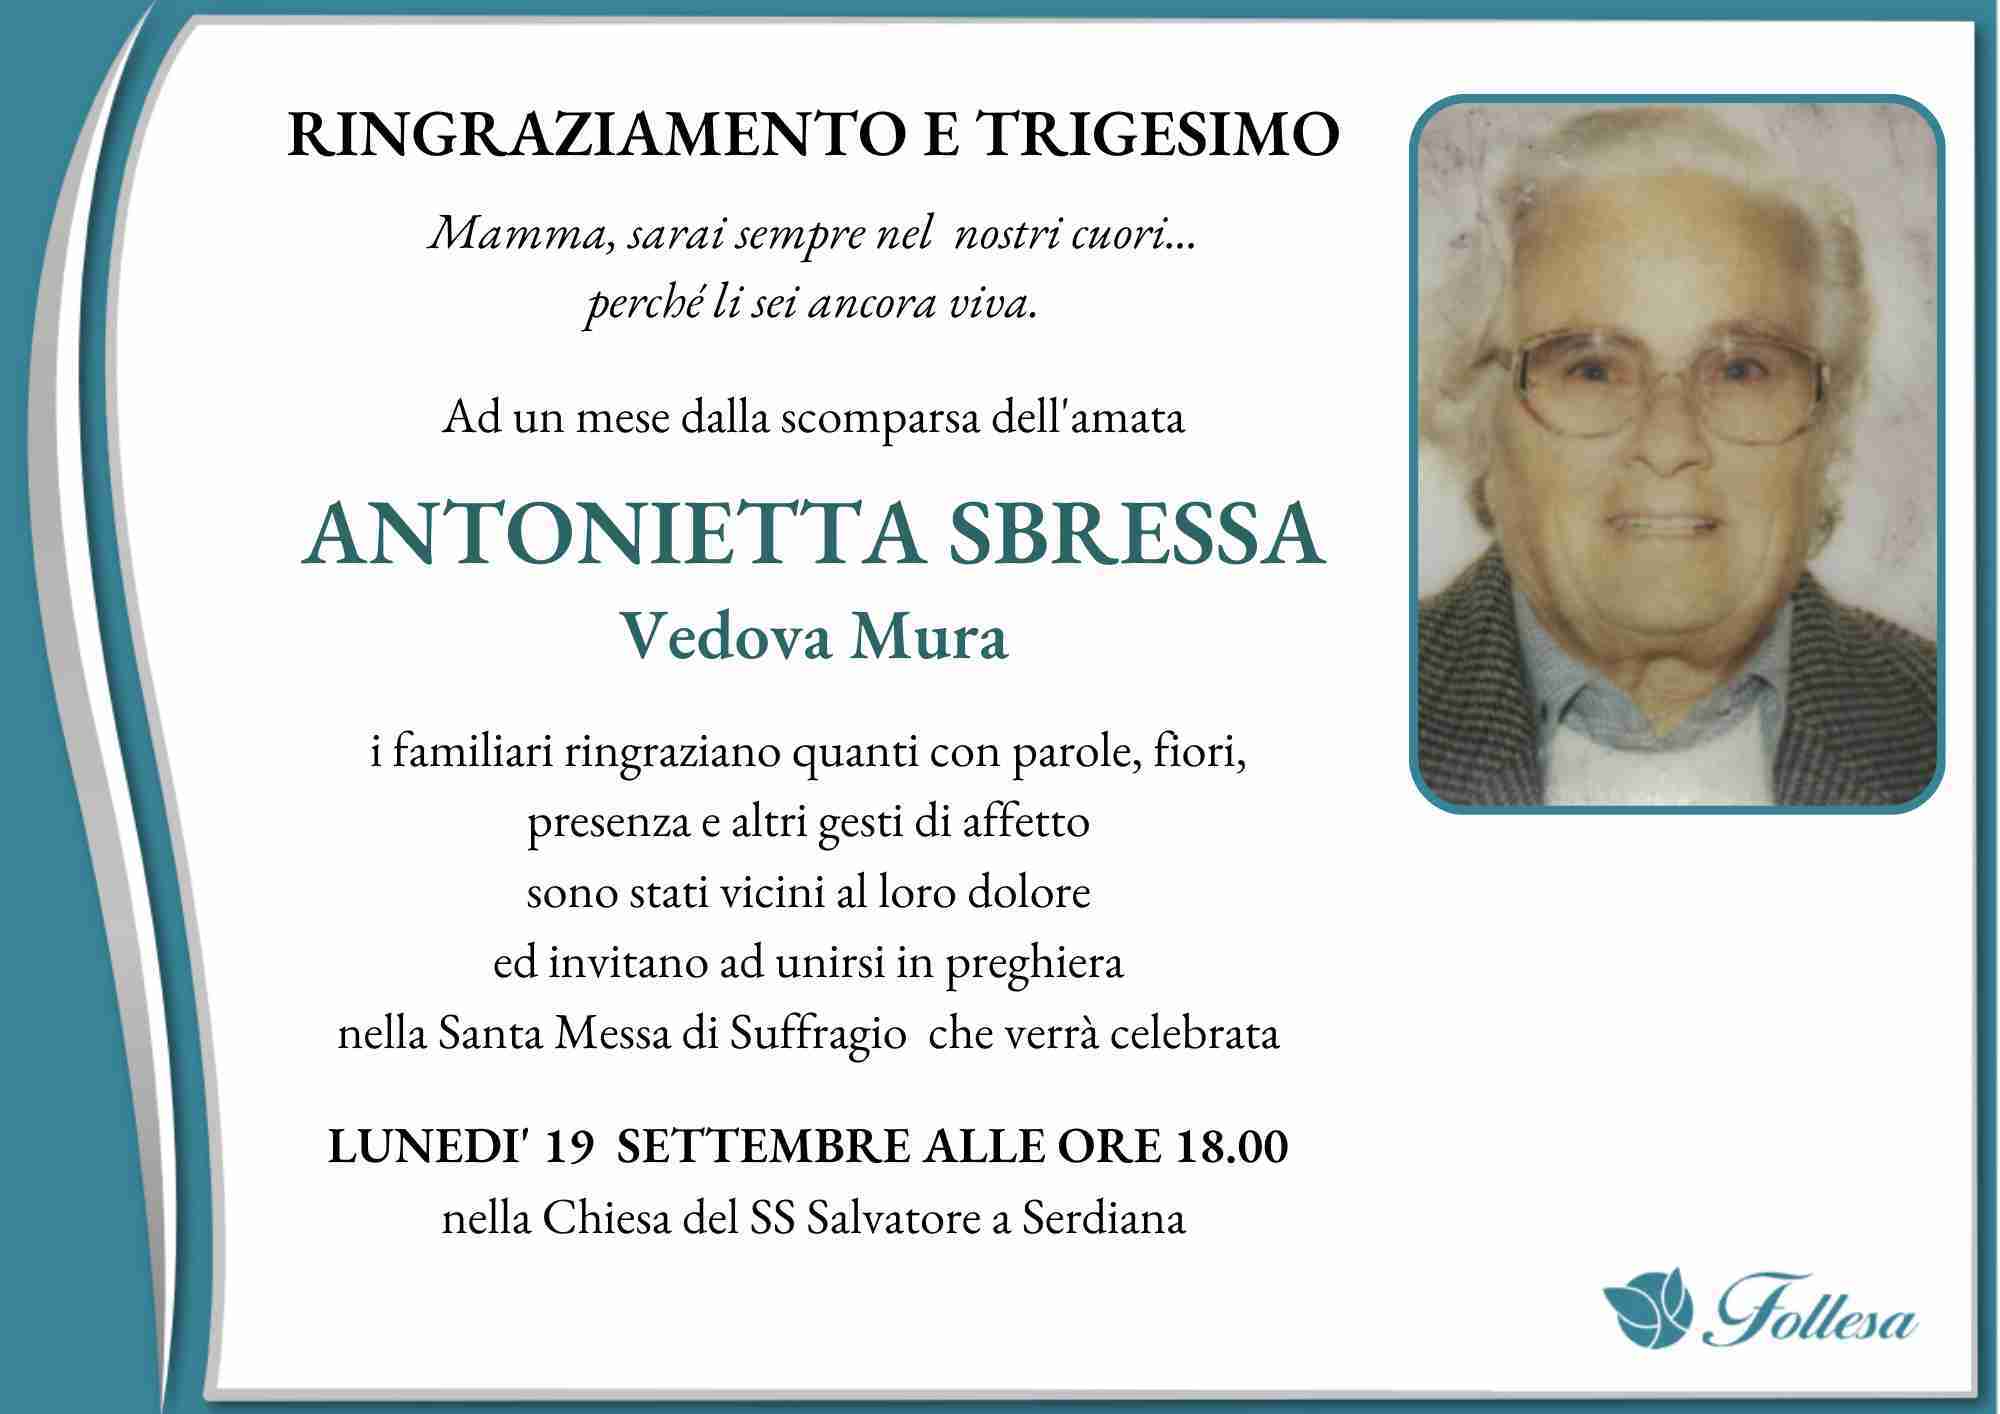 Antonietta Sbressa